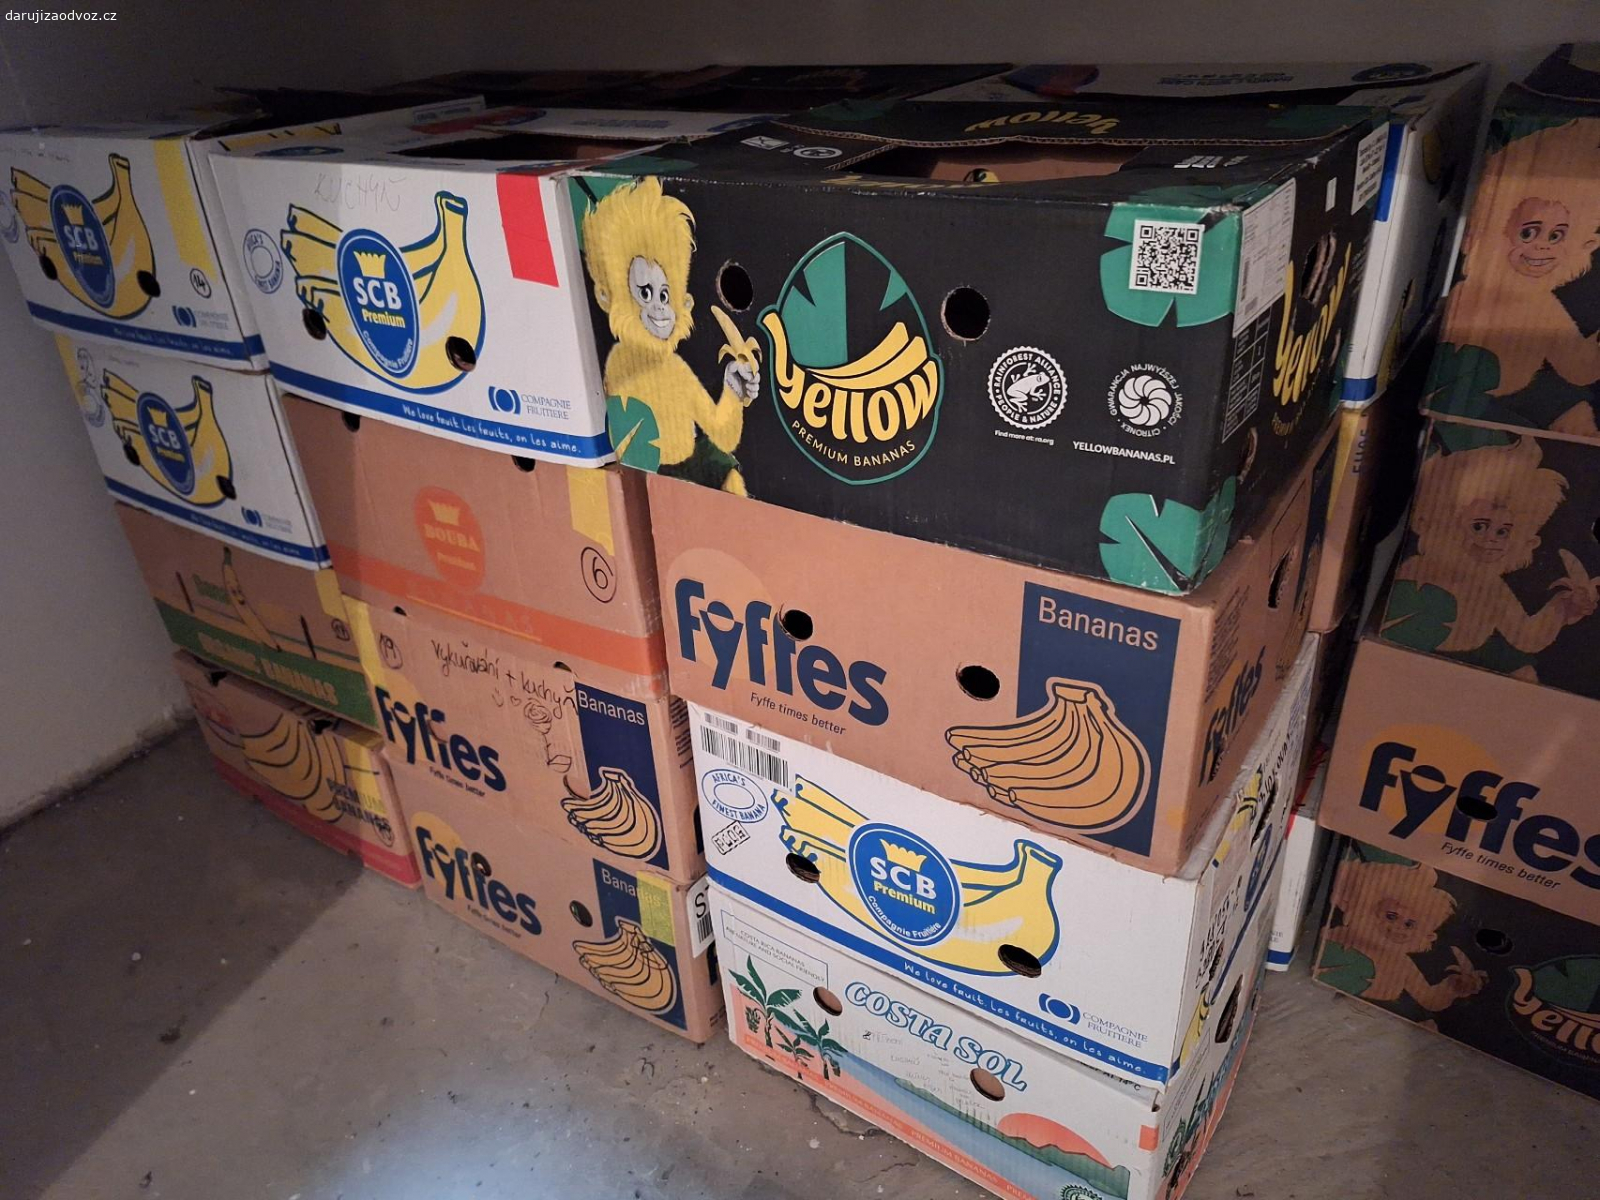 Banánové krabice. Dobrý den, daruji banánové krabice za odvoz. 28ks. Zůstalo po stěhování.